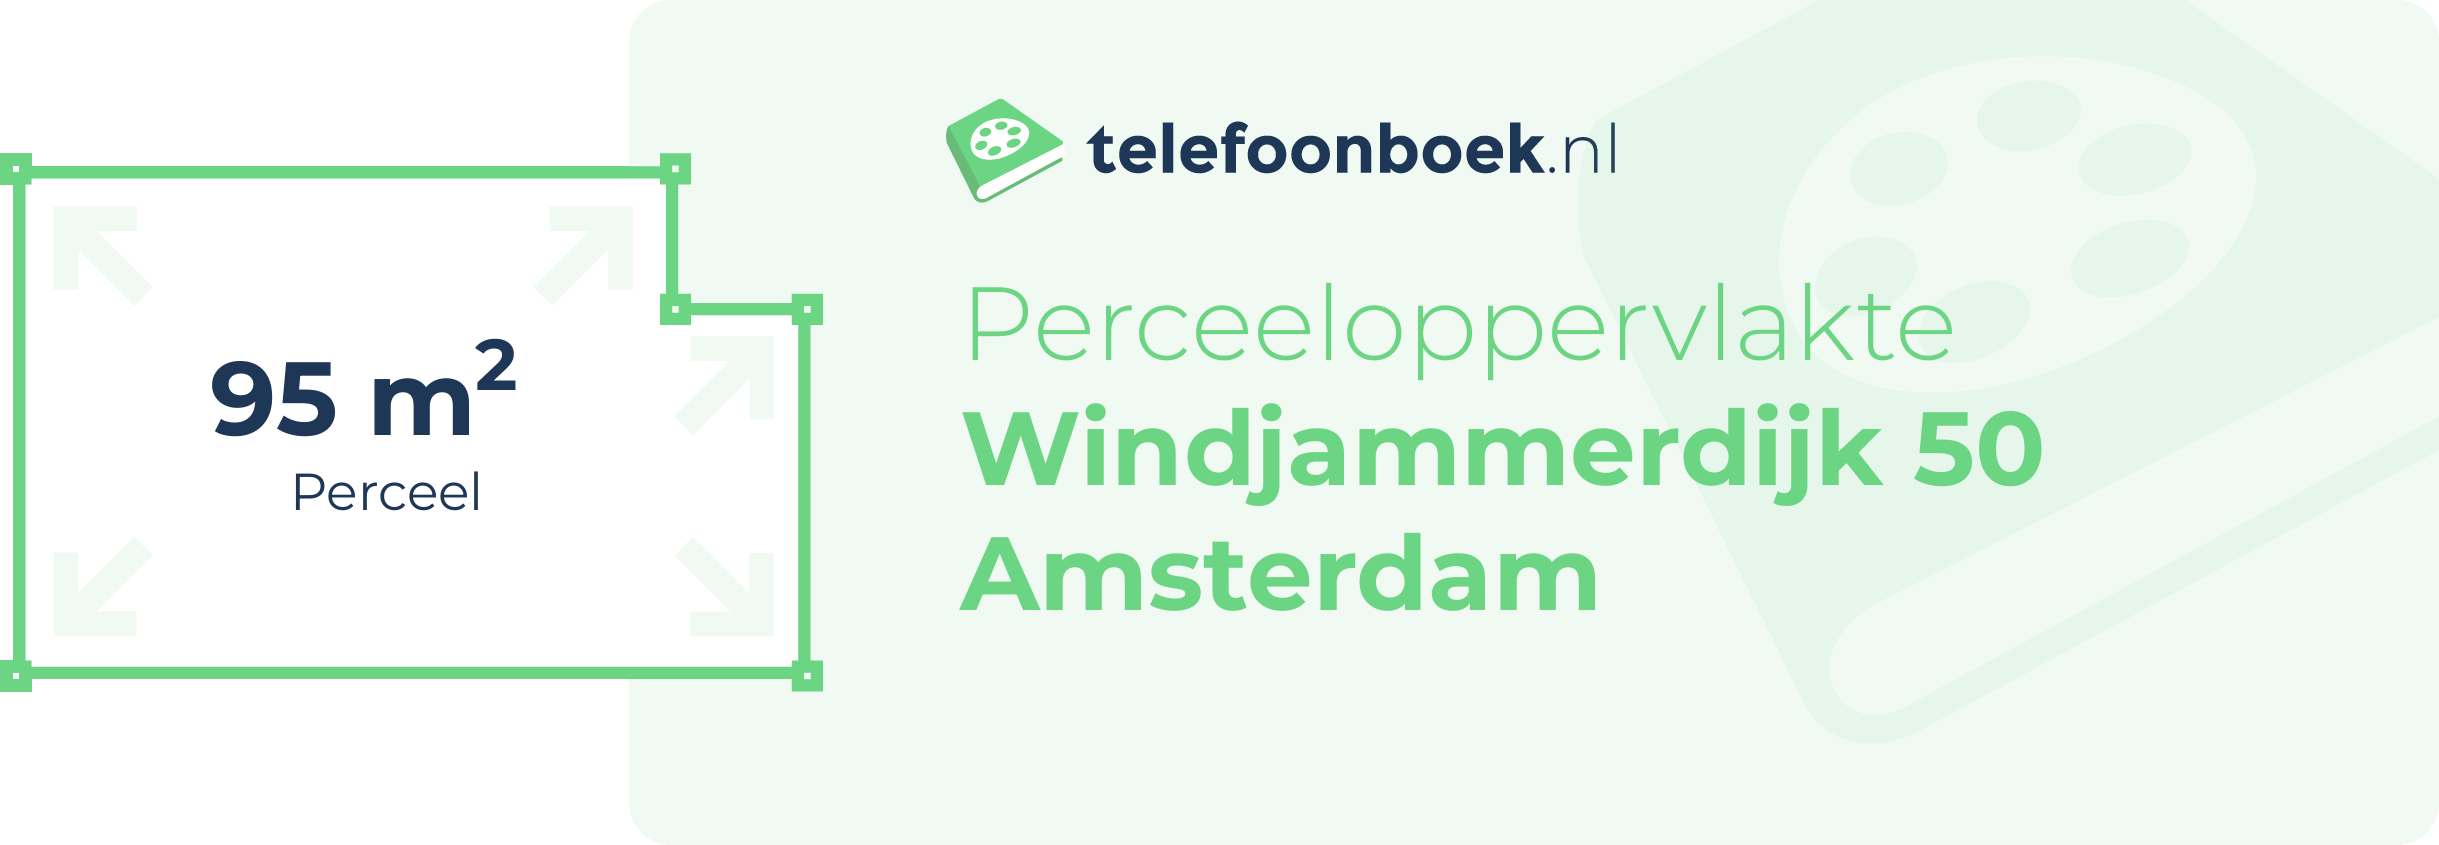 Perceeloppervlakte Windjammerdijk 50 Amsterdam